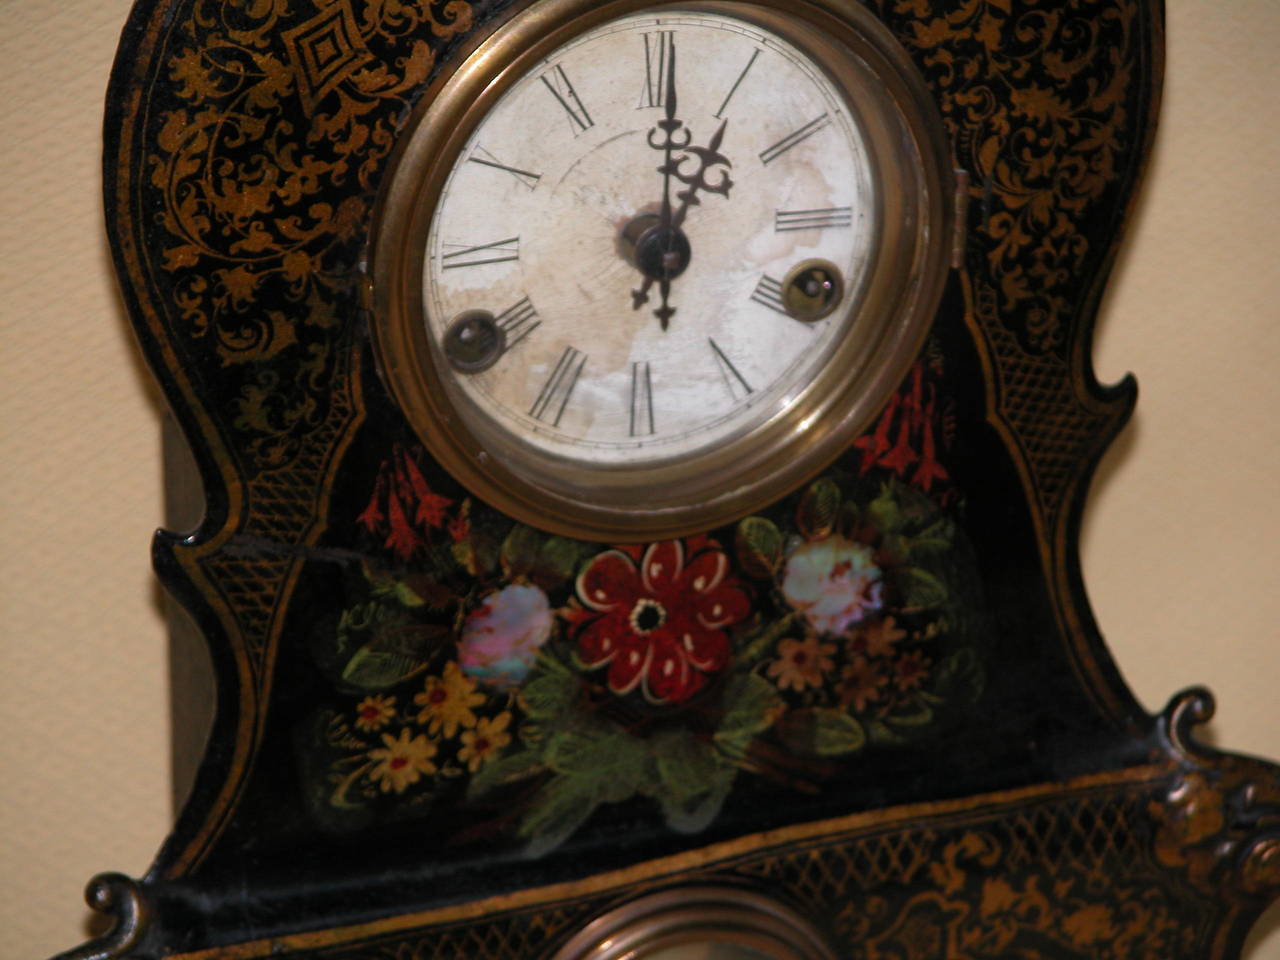 cast iron clock face